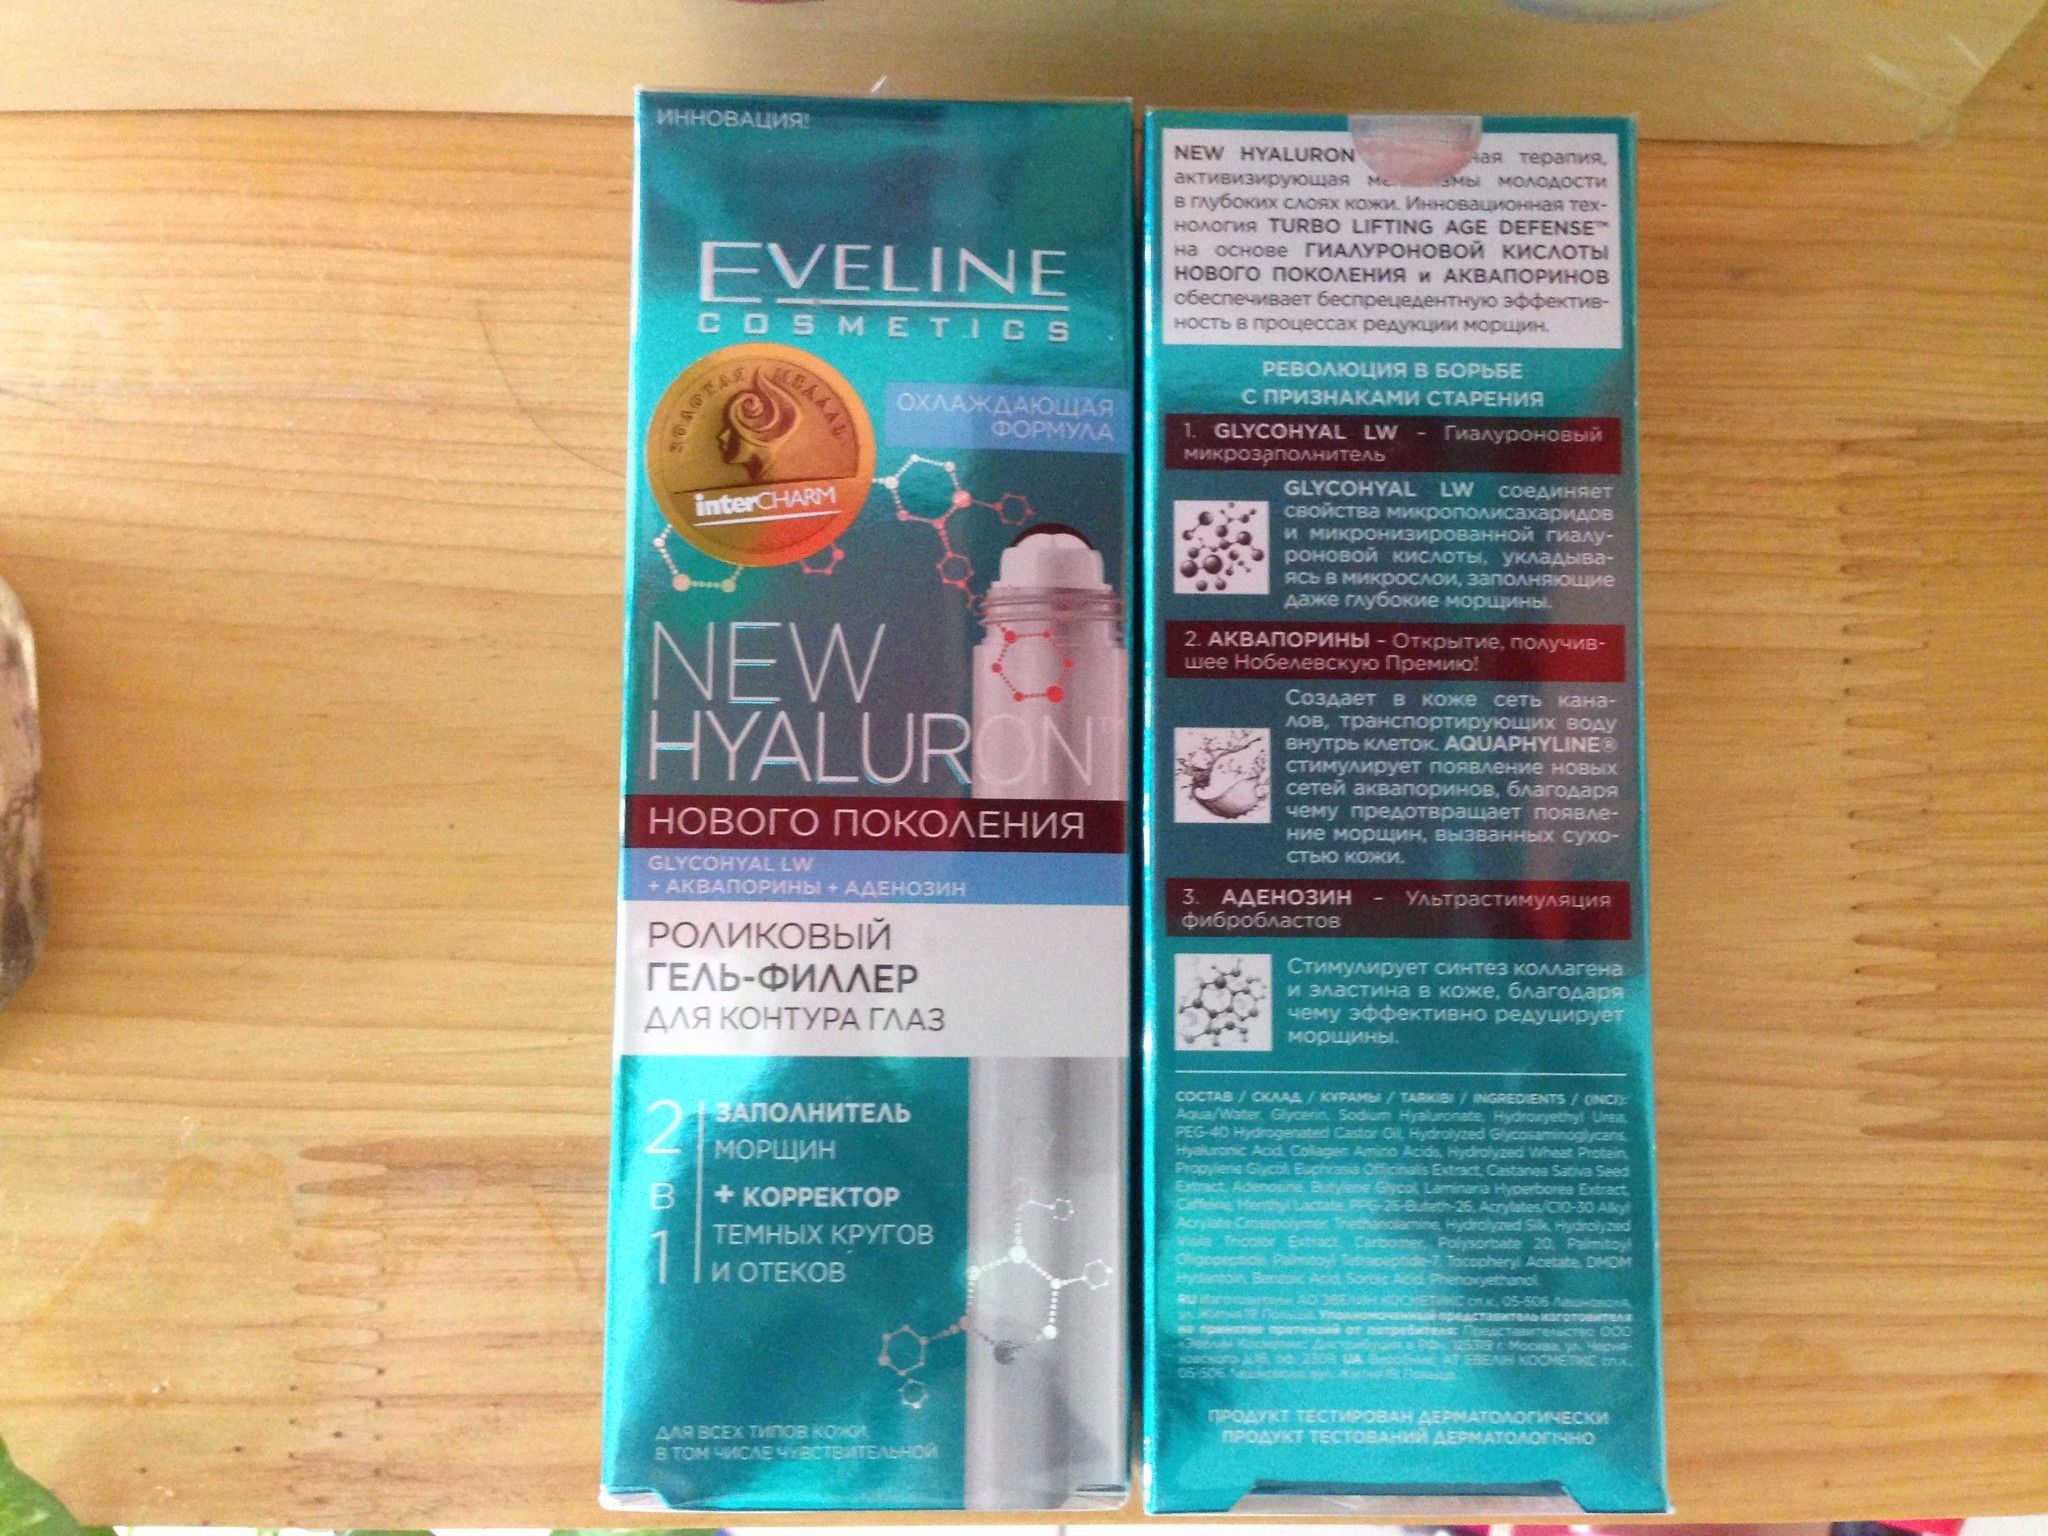 Thanh lăn nâng cơ mắt Bio Hyaluron 4D Eveline - Mỹ phẩm Nga Kennyplatform.com - GV 065